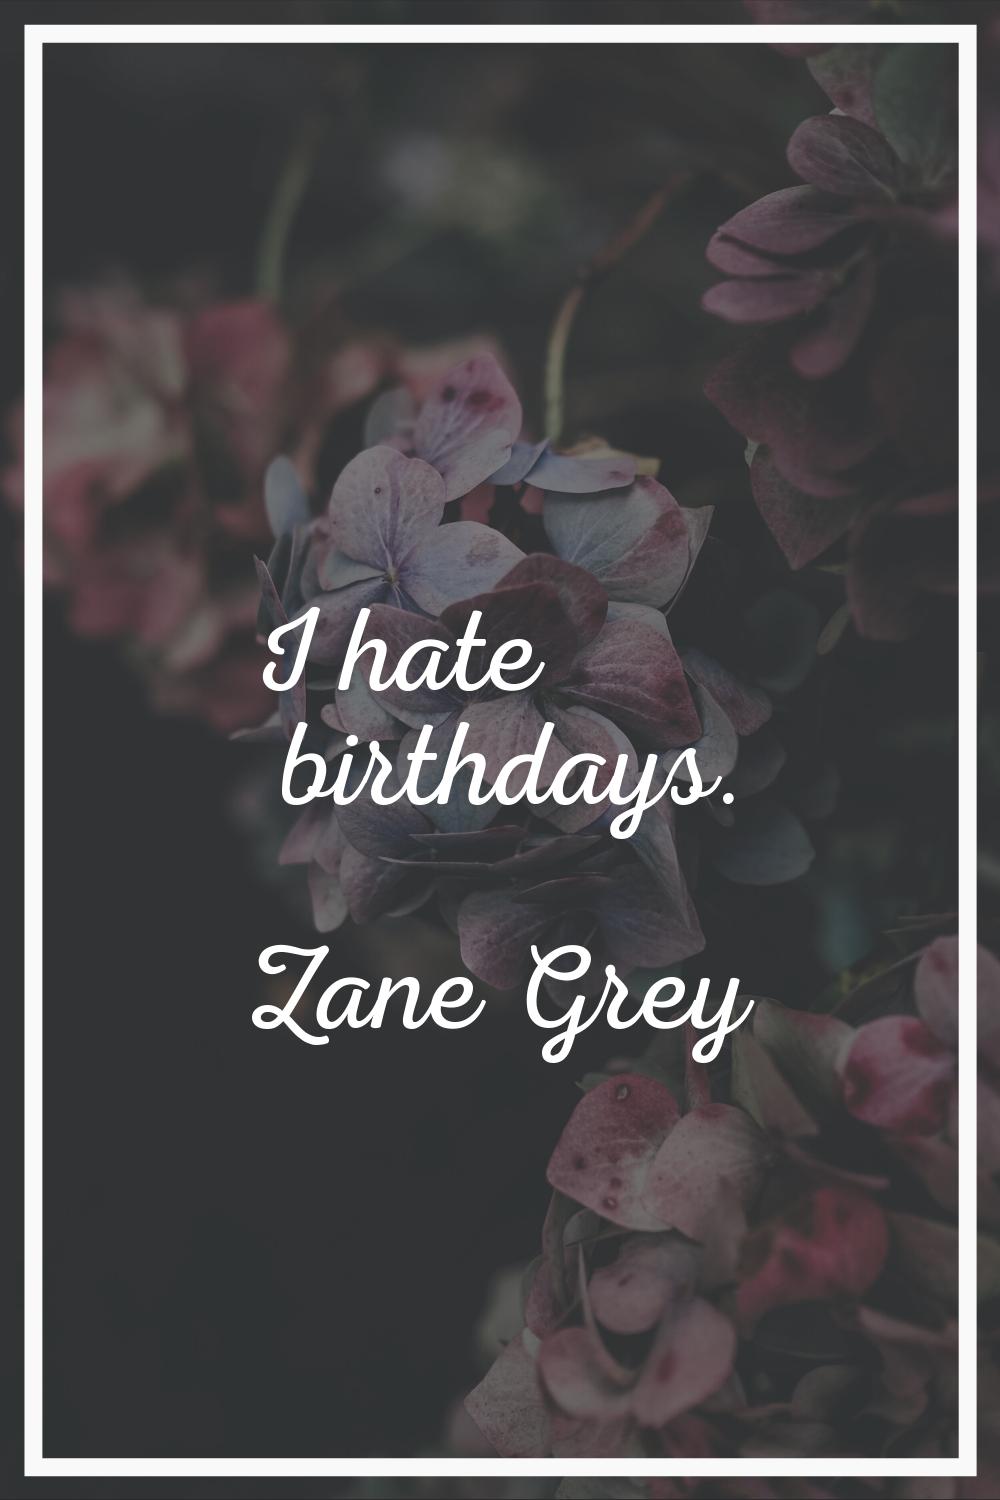 I hate birthdays.